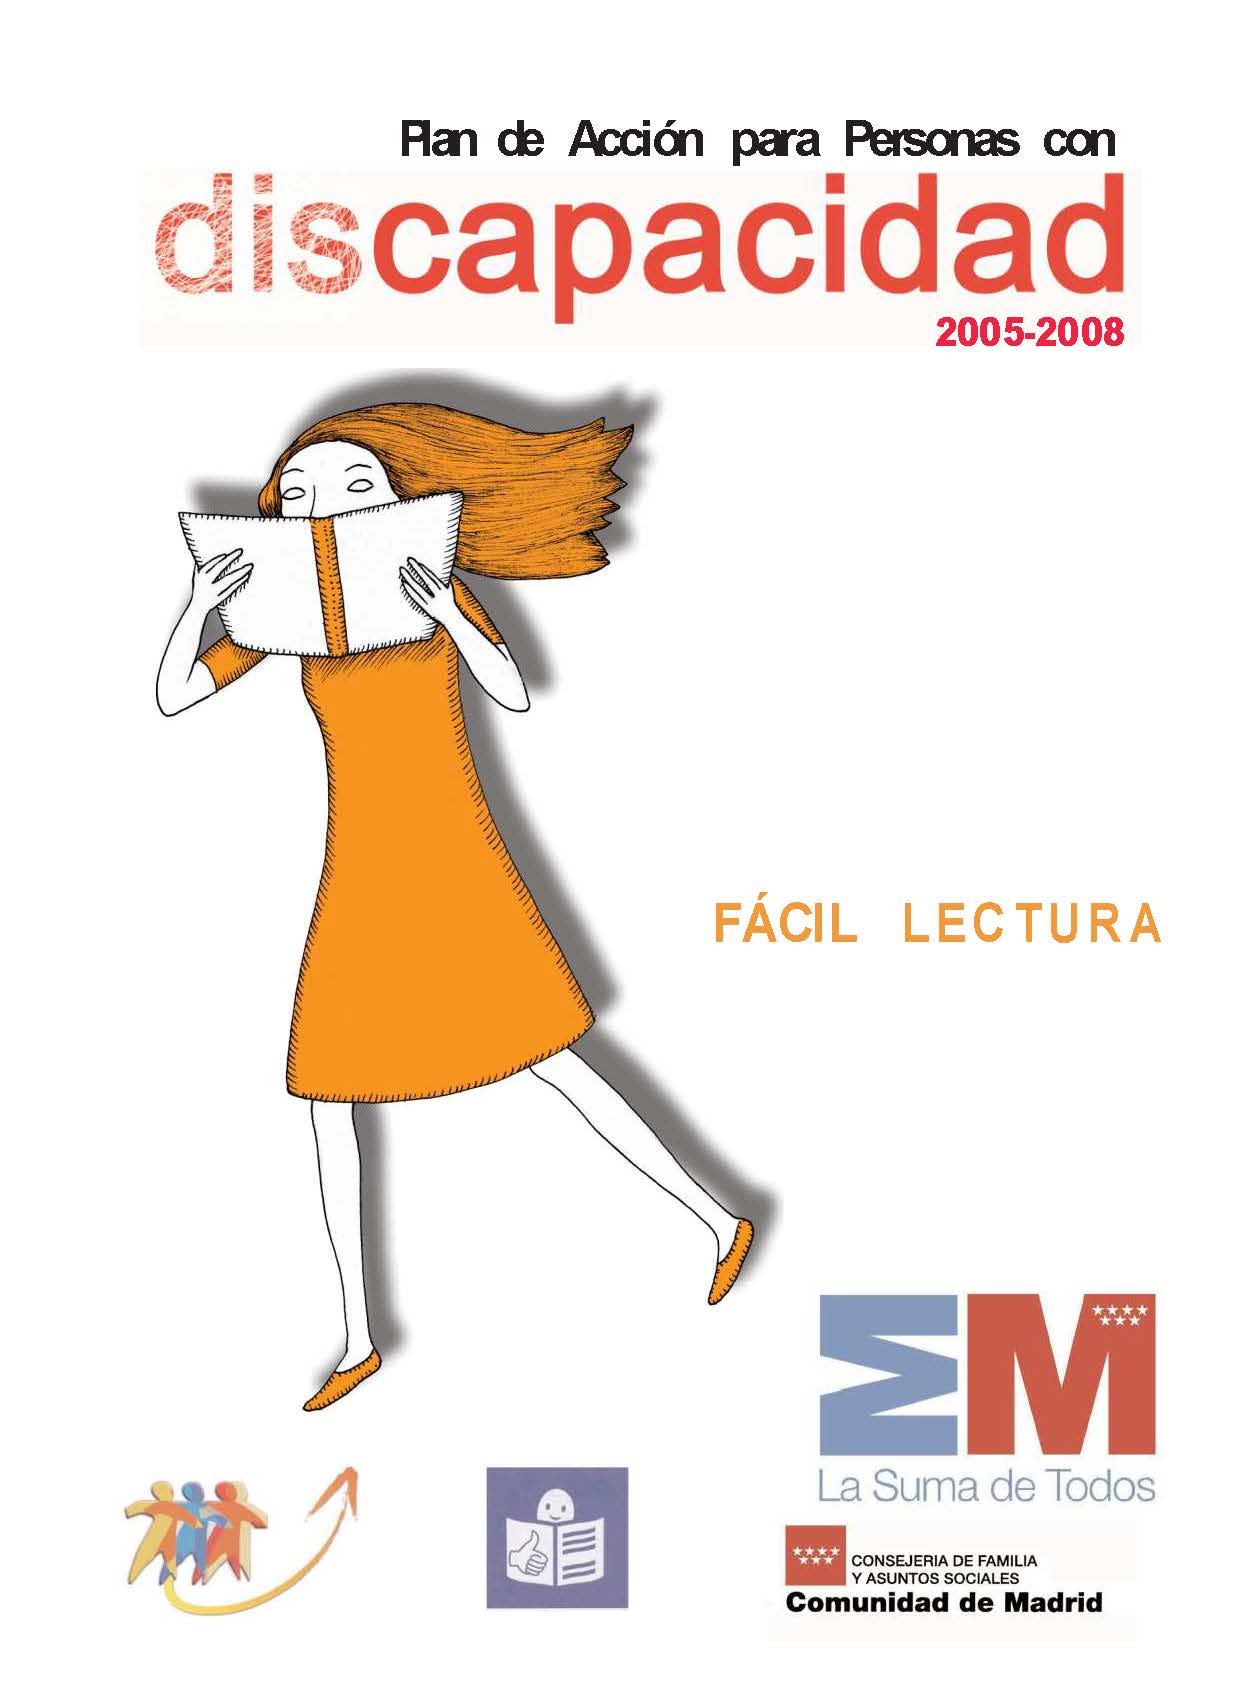 Portada de Plan de Acción para personas con discapacidad  2005-2008 de la Comunidad de Madrid de fácil lectura